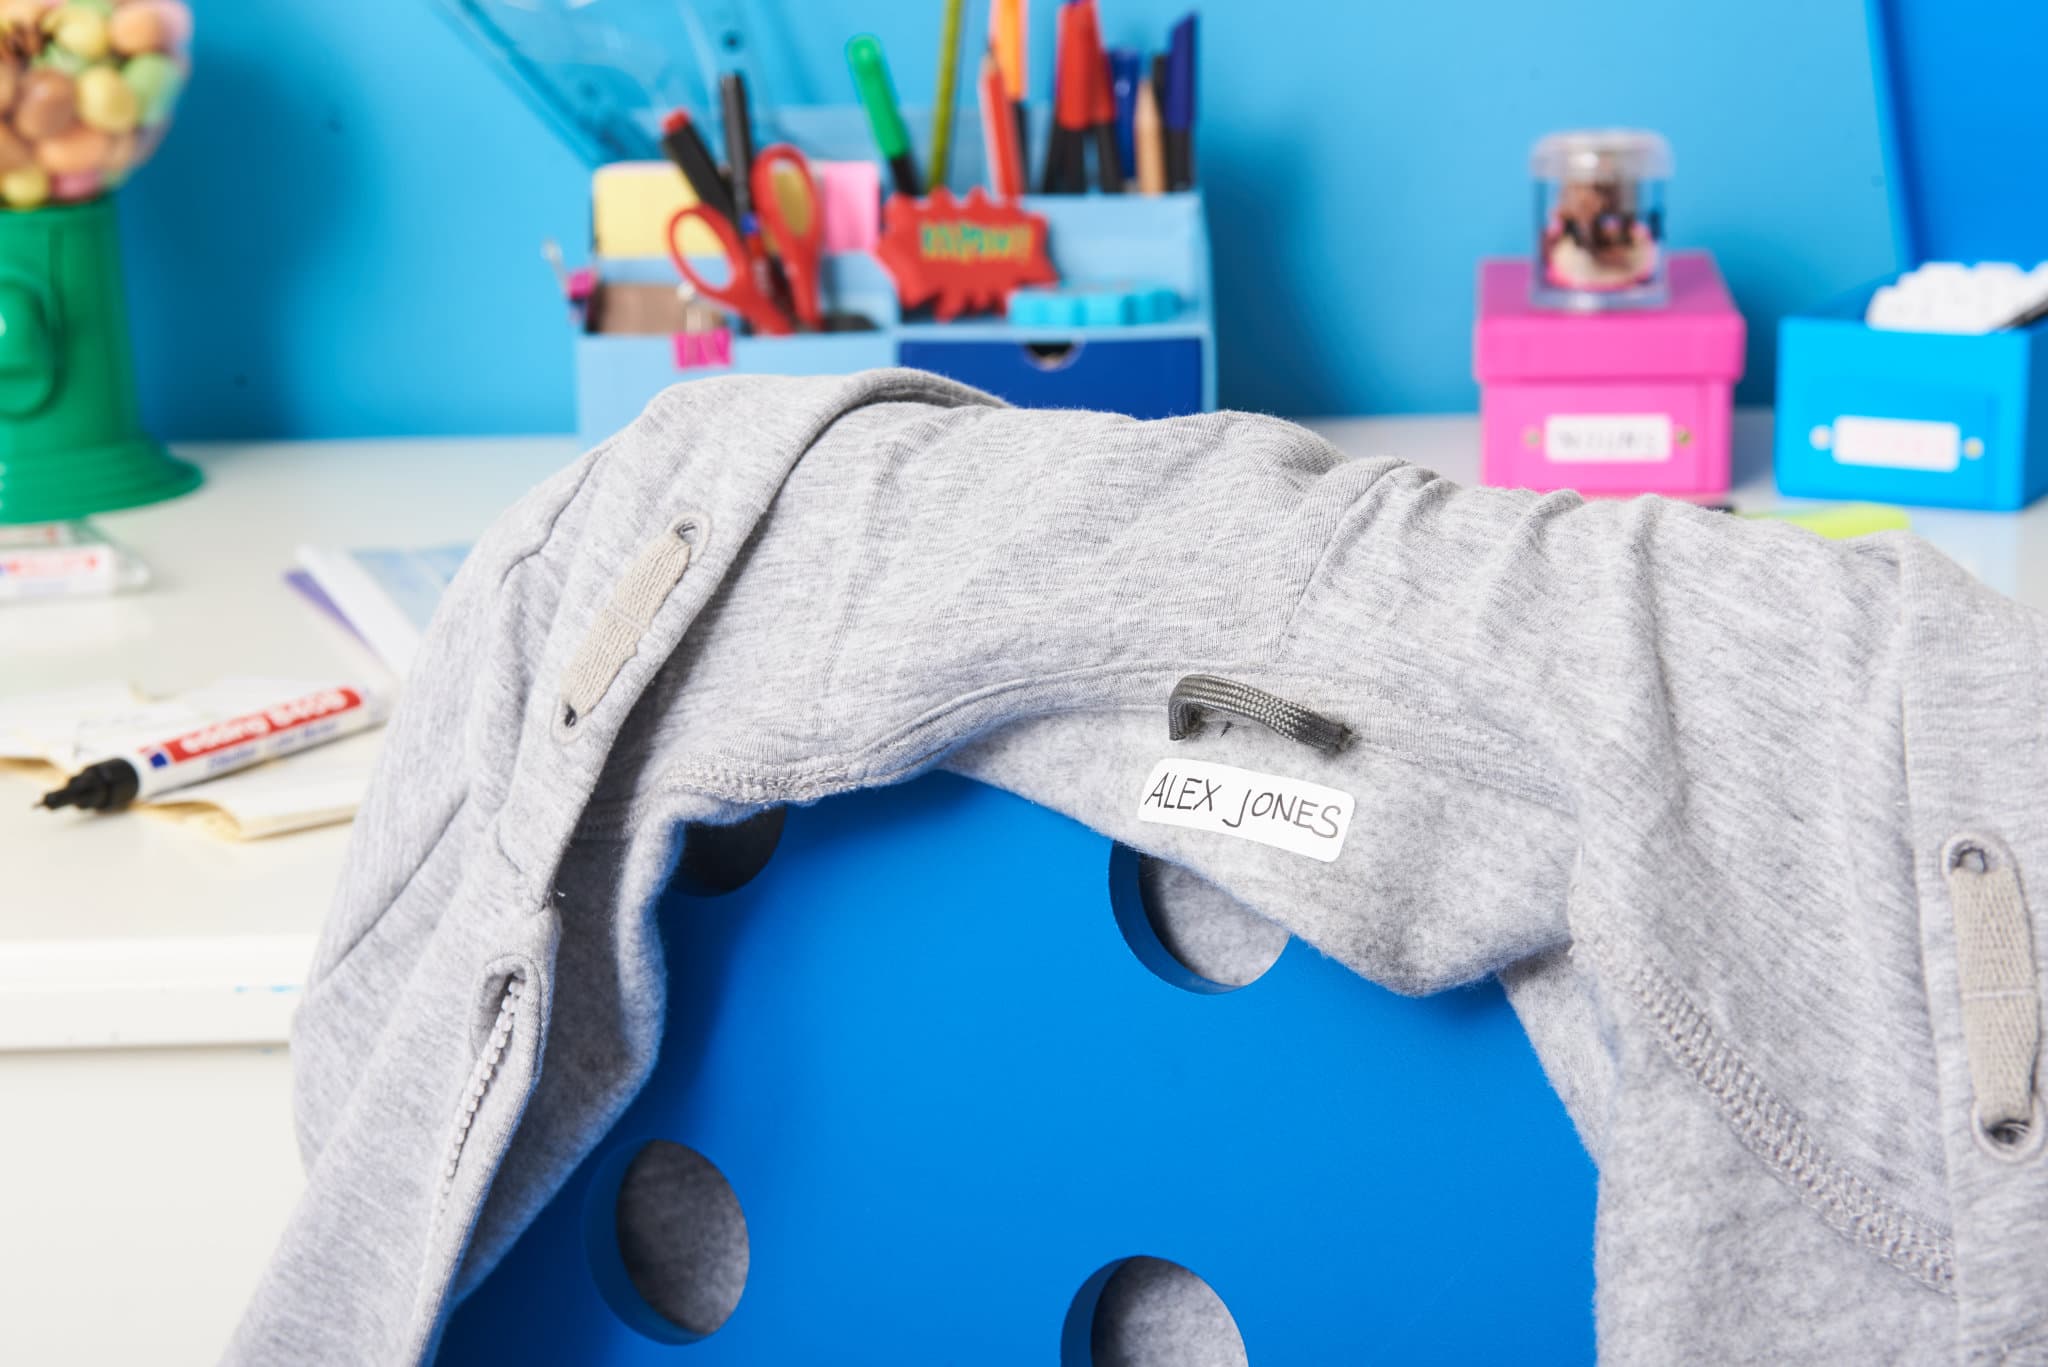 Etikettenmarker mit waschfester Tinte zur dauerhaften Kennzeichnung einer Sweatshirtjacke